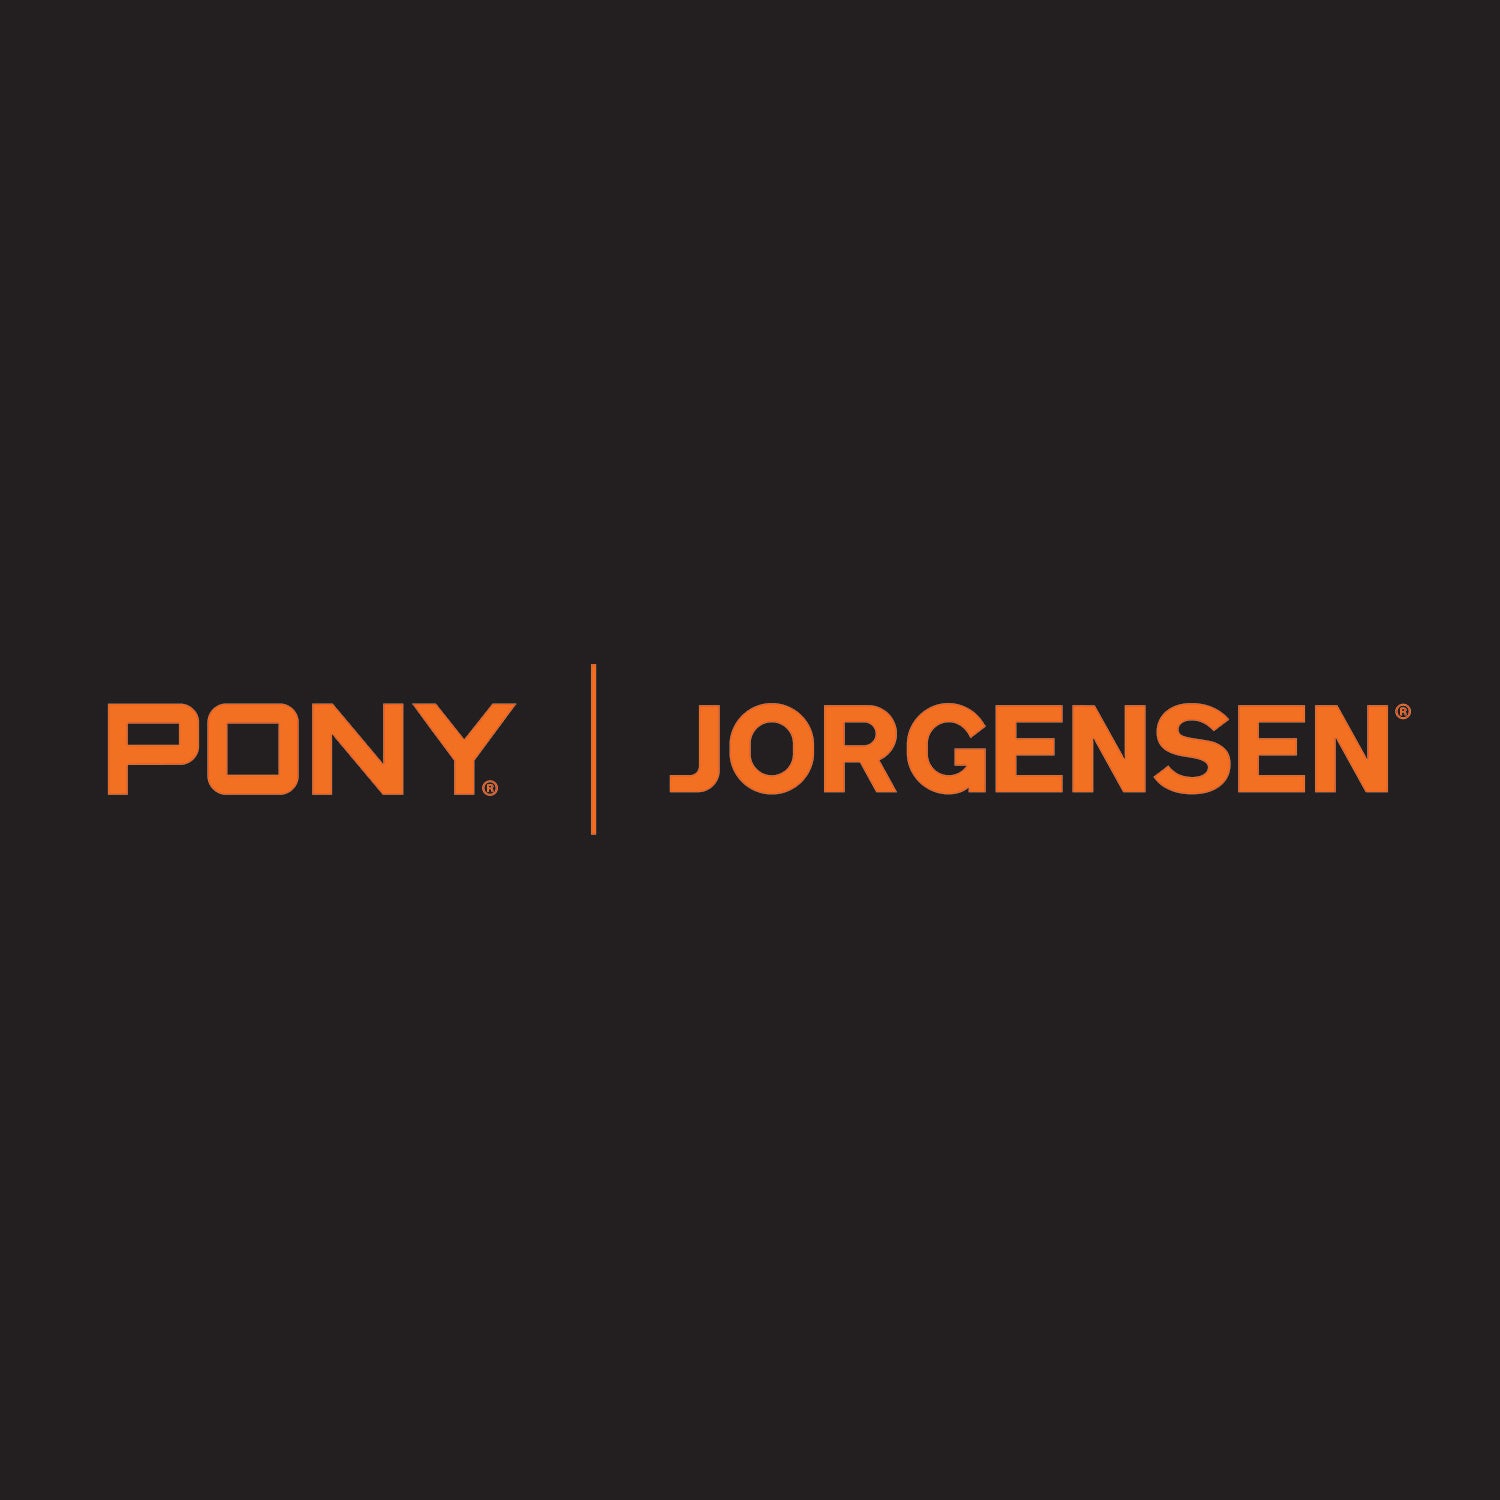 Pony | Jorgensen